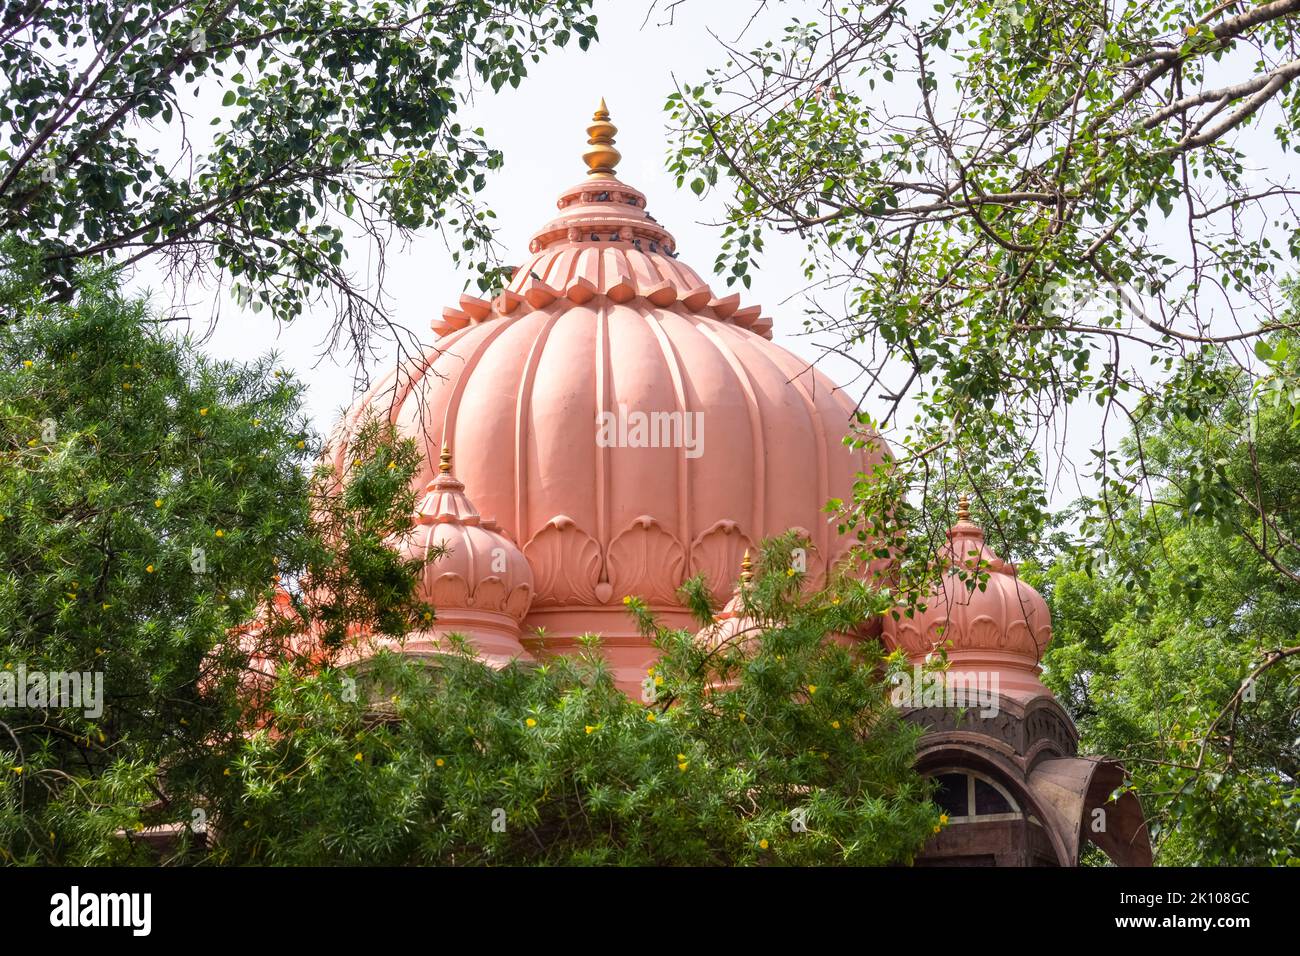 Kuppel von Boliya Sarkar KI Chhatri, Indore, Madhya Pradesh. Auch bekannt als Malhar Rao Chhatri. Indische Architektur. Alte Architektur des indischen Tempels Stockfoto